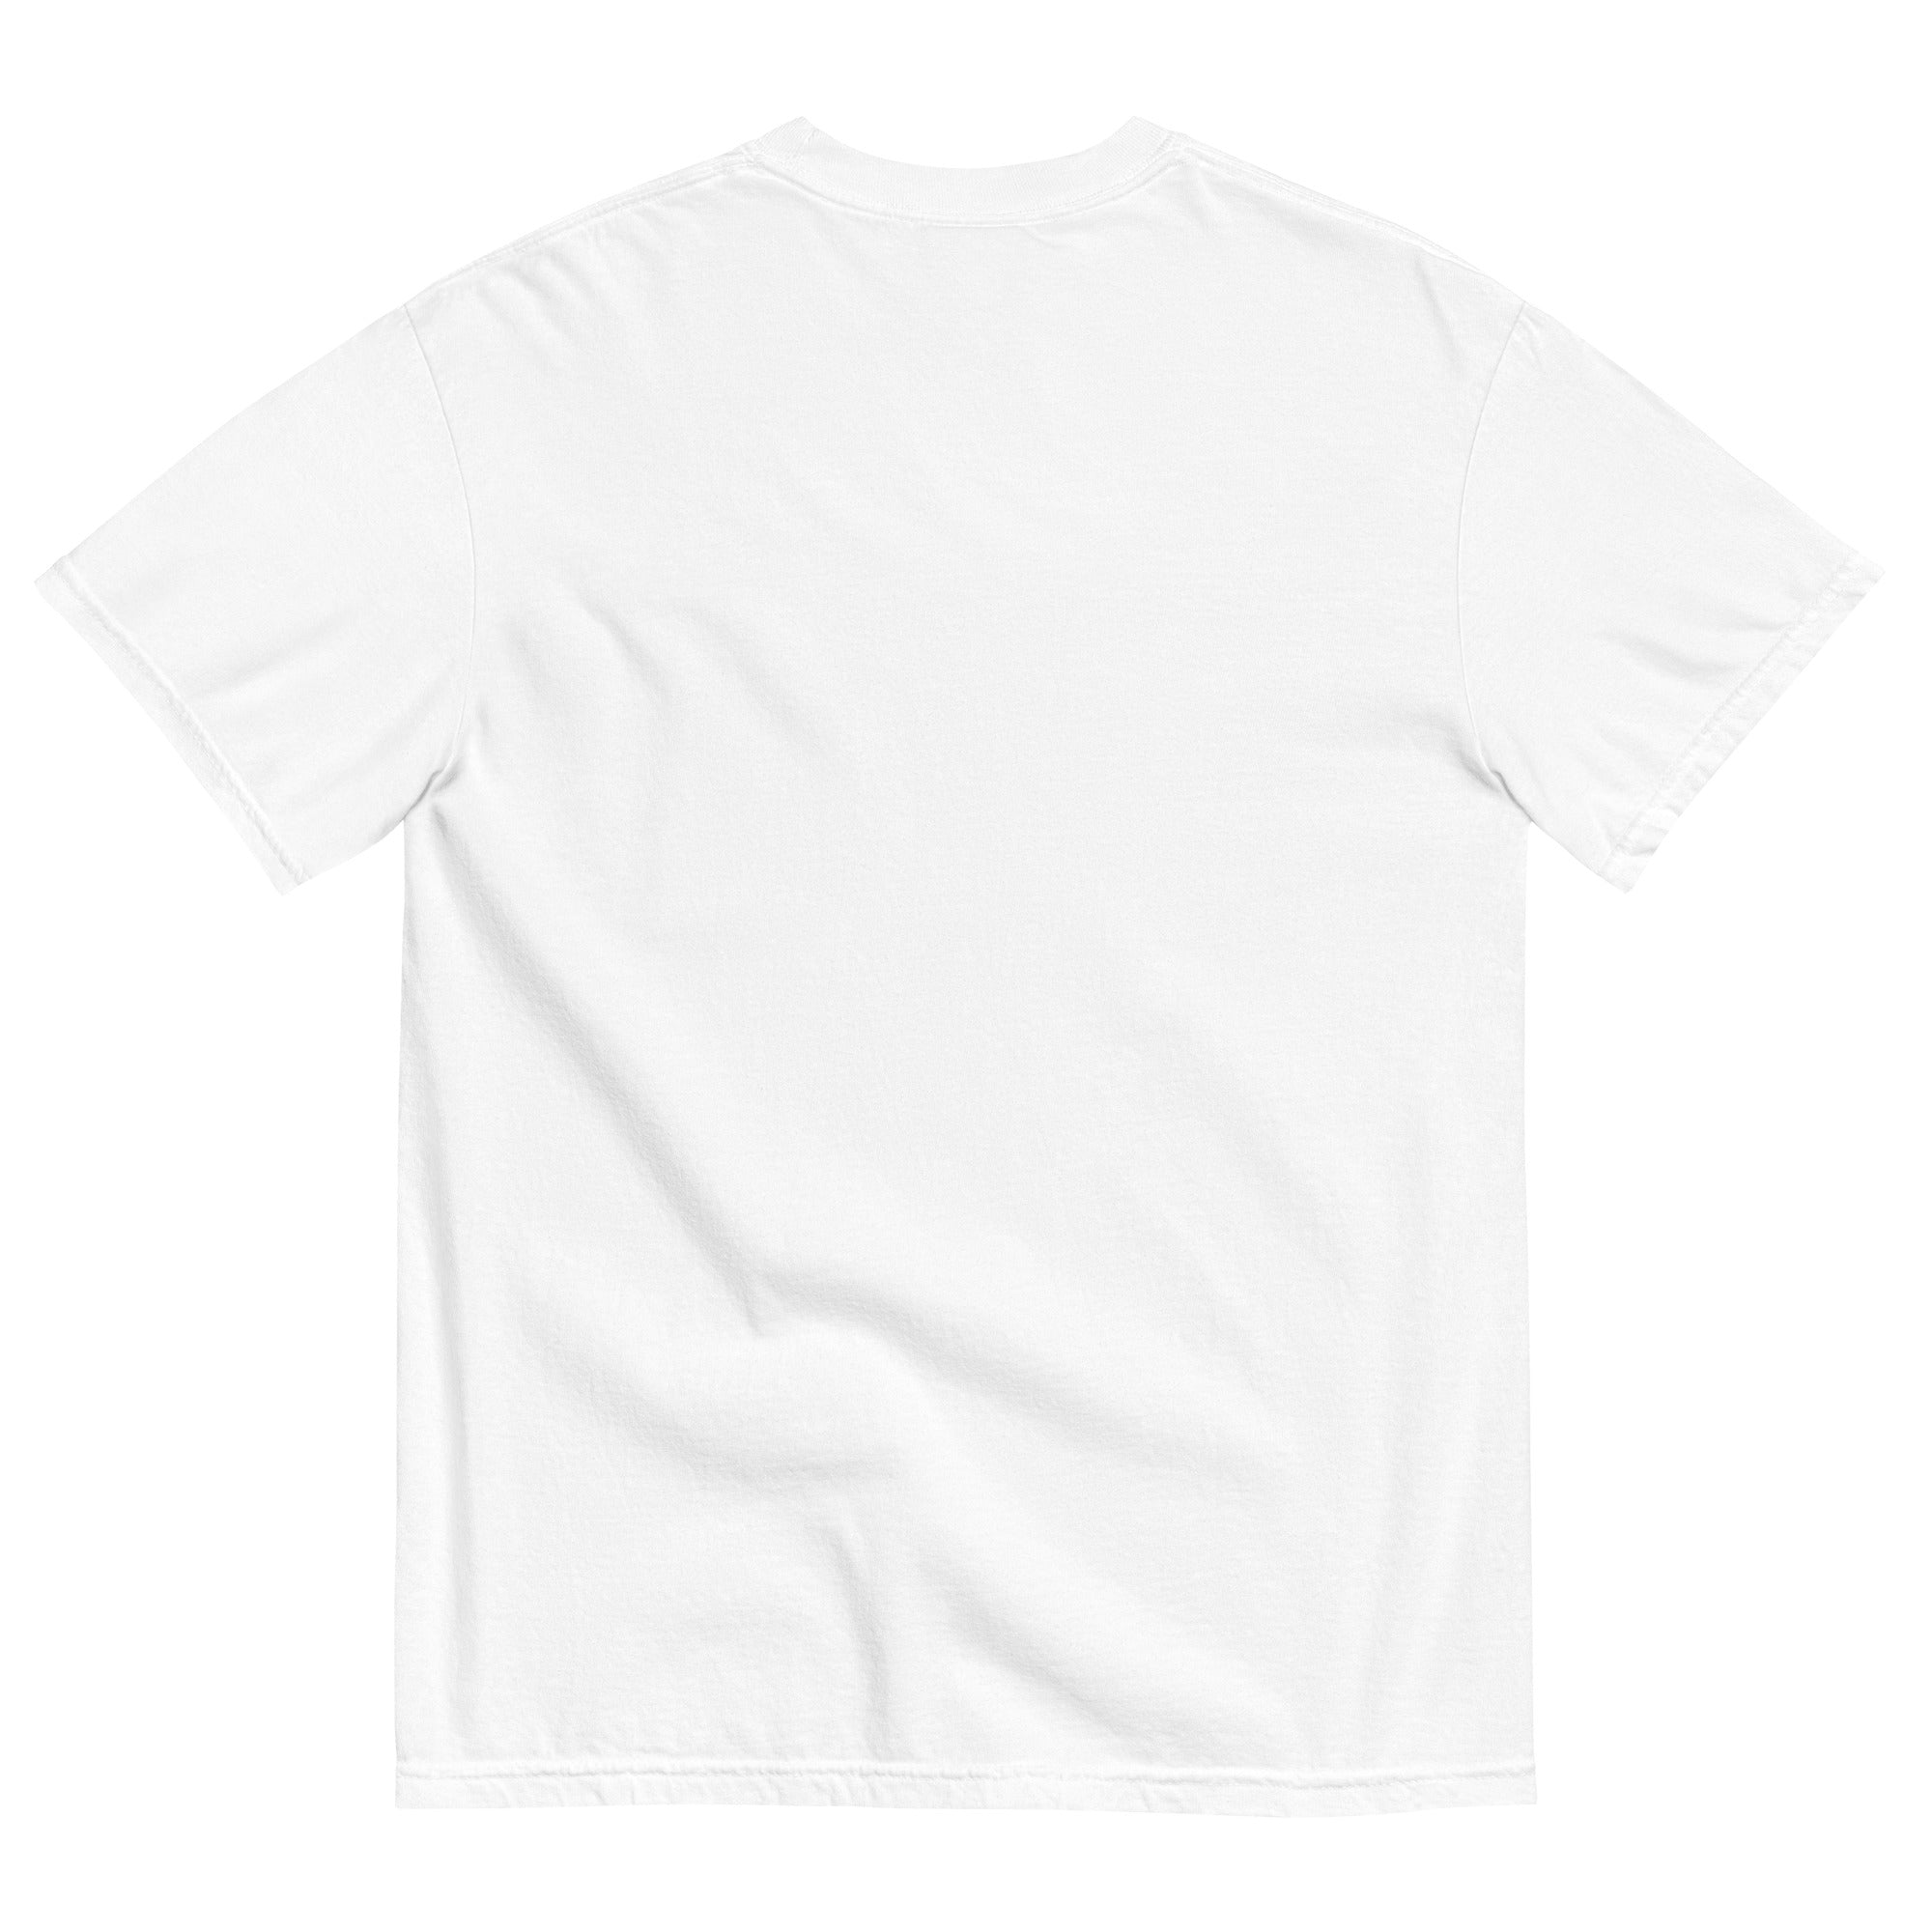 1812 Unisex Heavyweight T-shirt